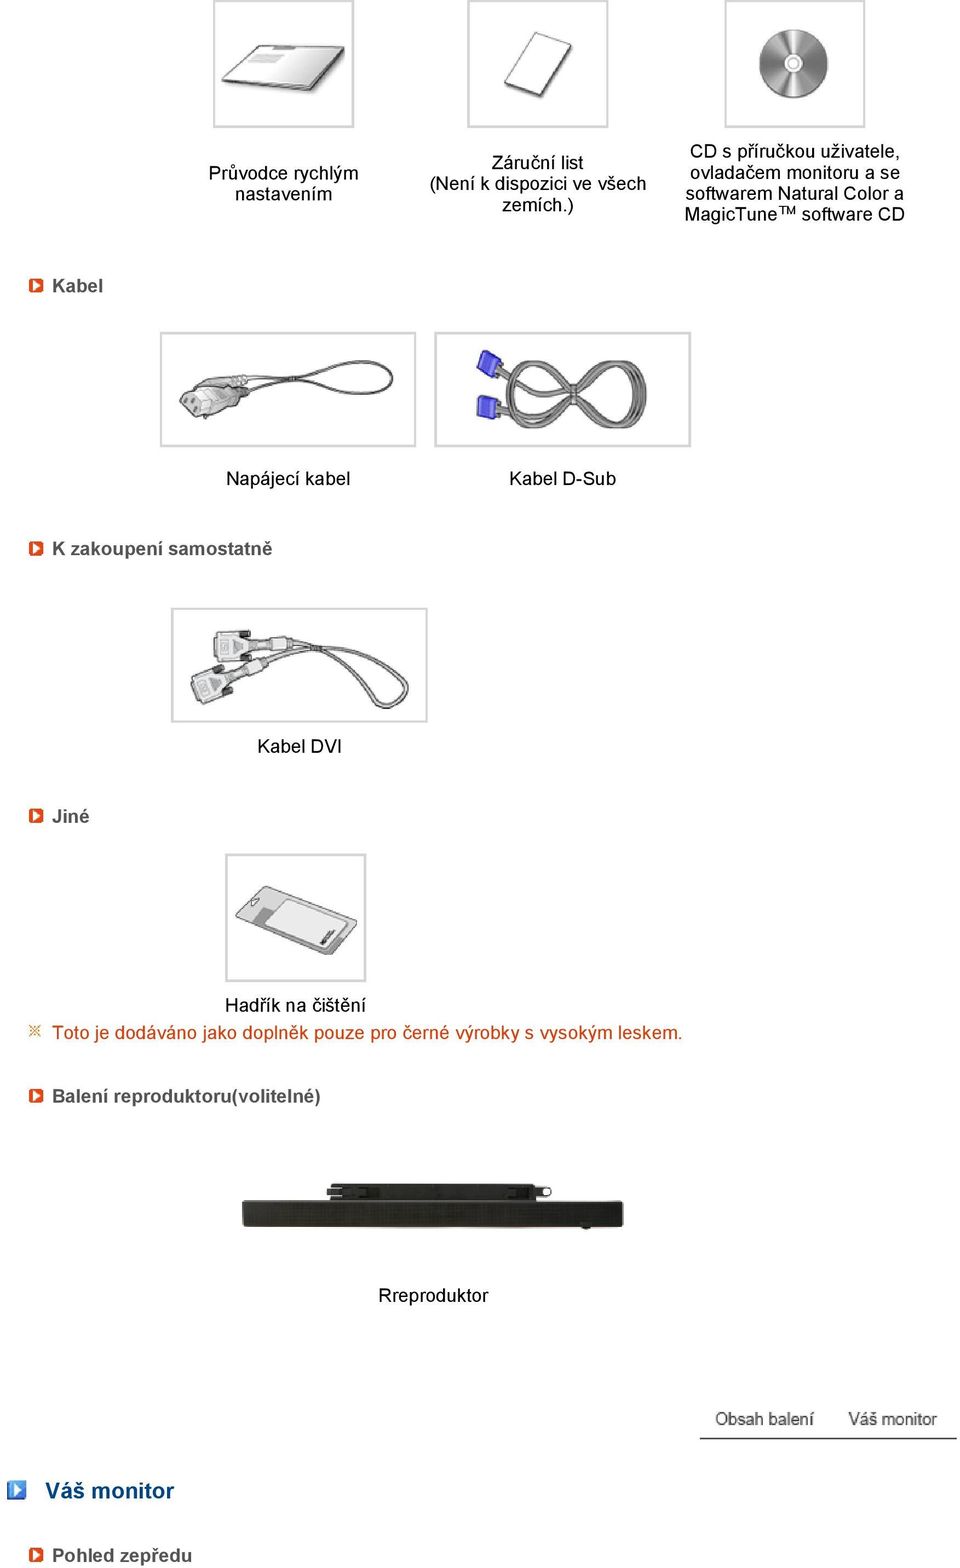 Kabel Napájecí kabel Kabel D-Sub K zakoupení samostatně Kabel DVI Jiné Hadřík na čištění Toto je